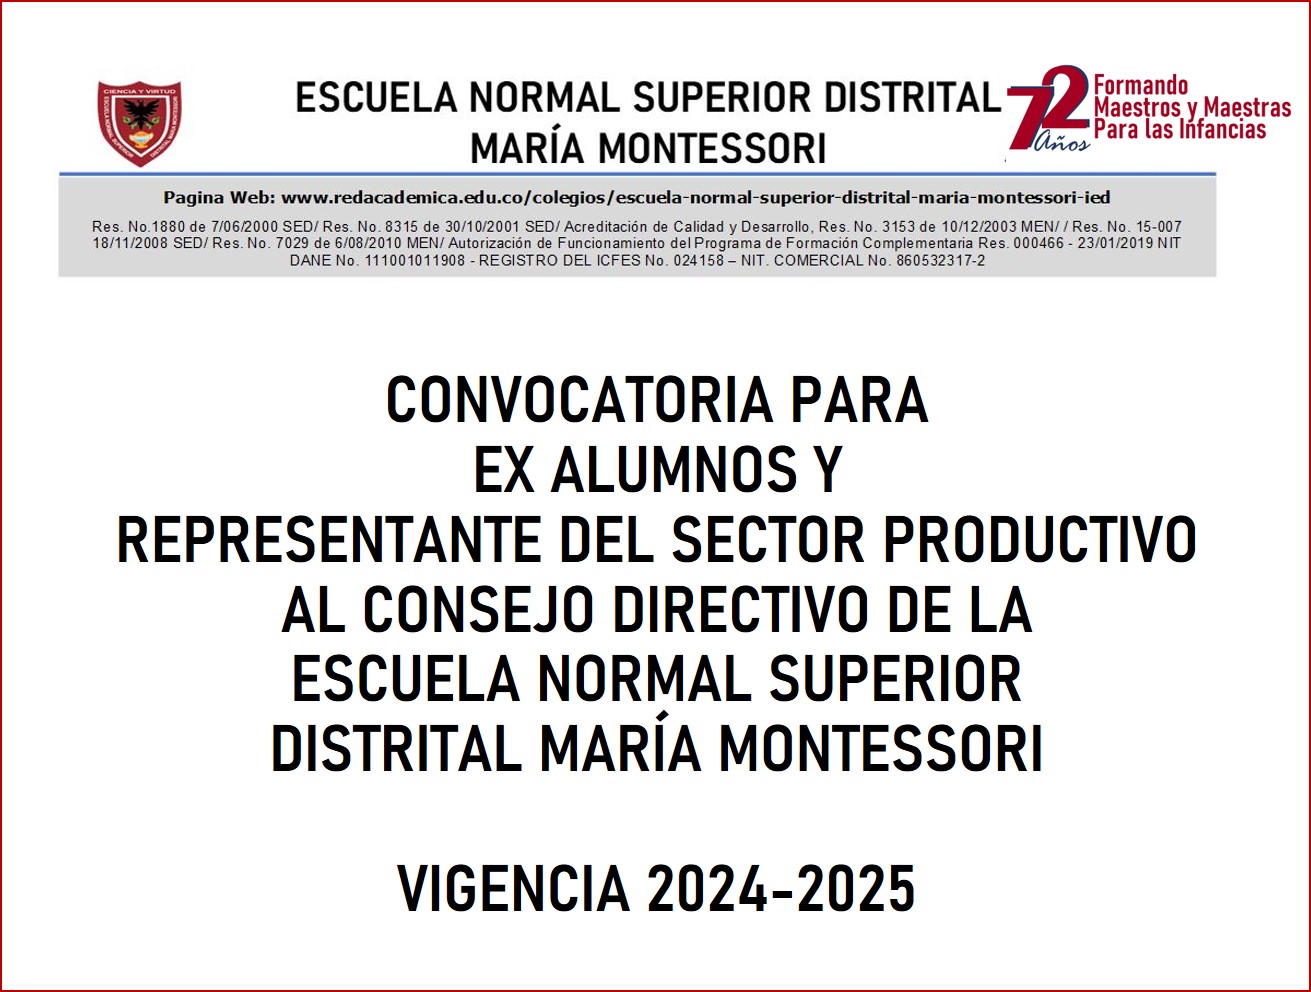 CONVOCATORIA PARA EGRESADOS AL CONSEJO DIRECTIVO DE LA ESCUELA NORMAL SUPERIOR DISTRITAL MARÍA MONTESSORI VIGENCIA 2024-2025